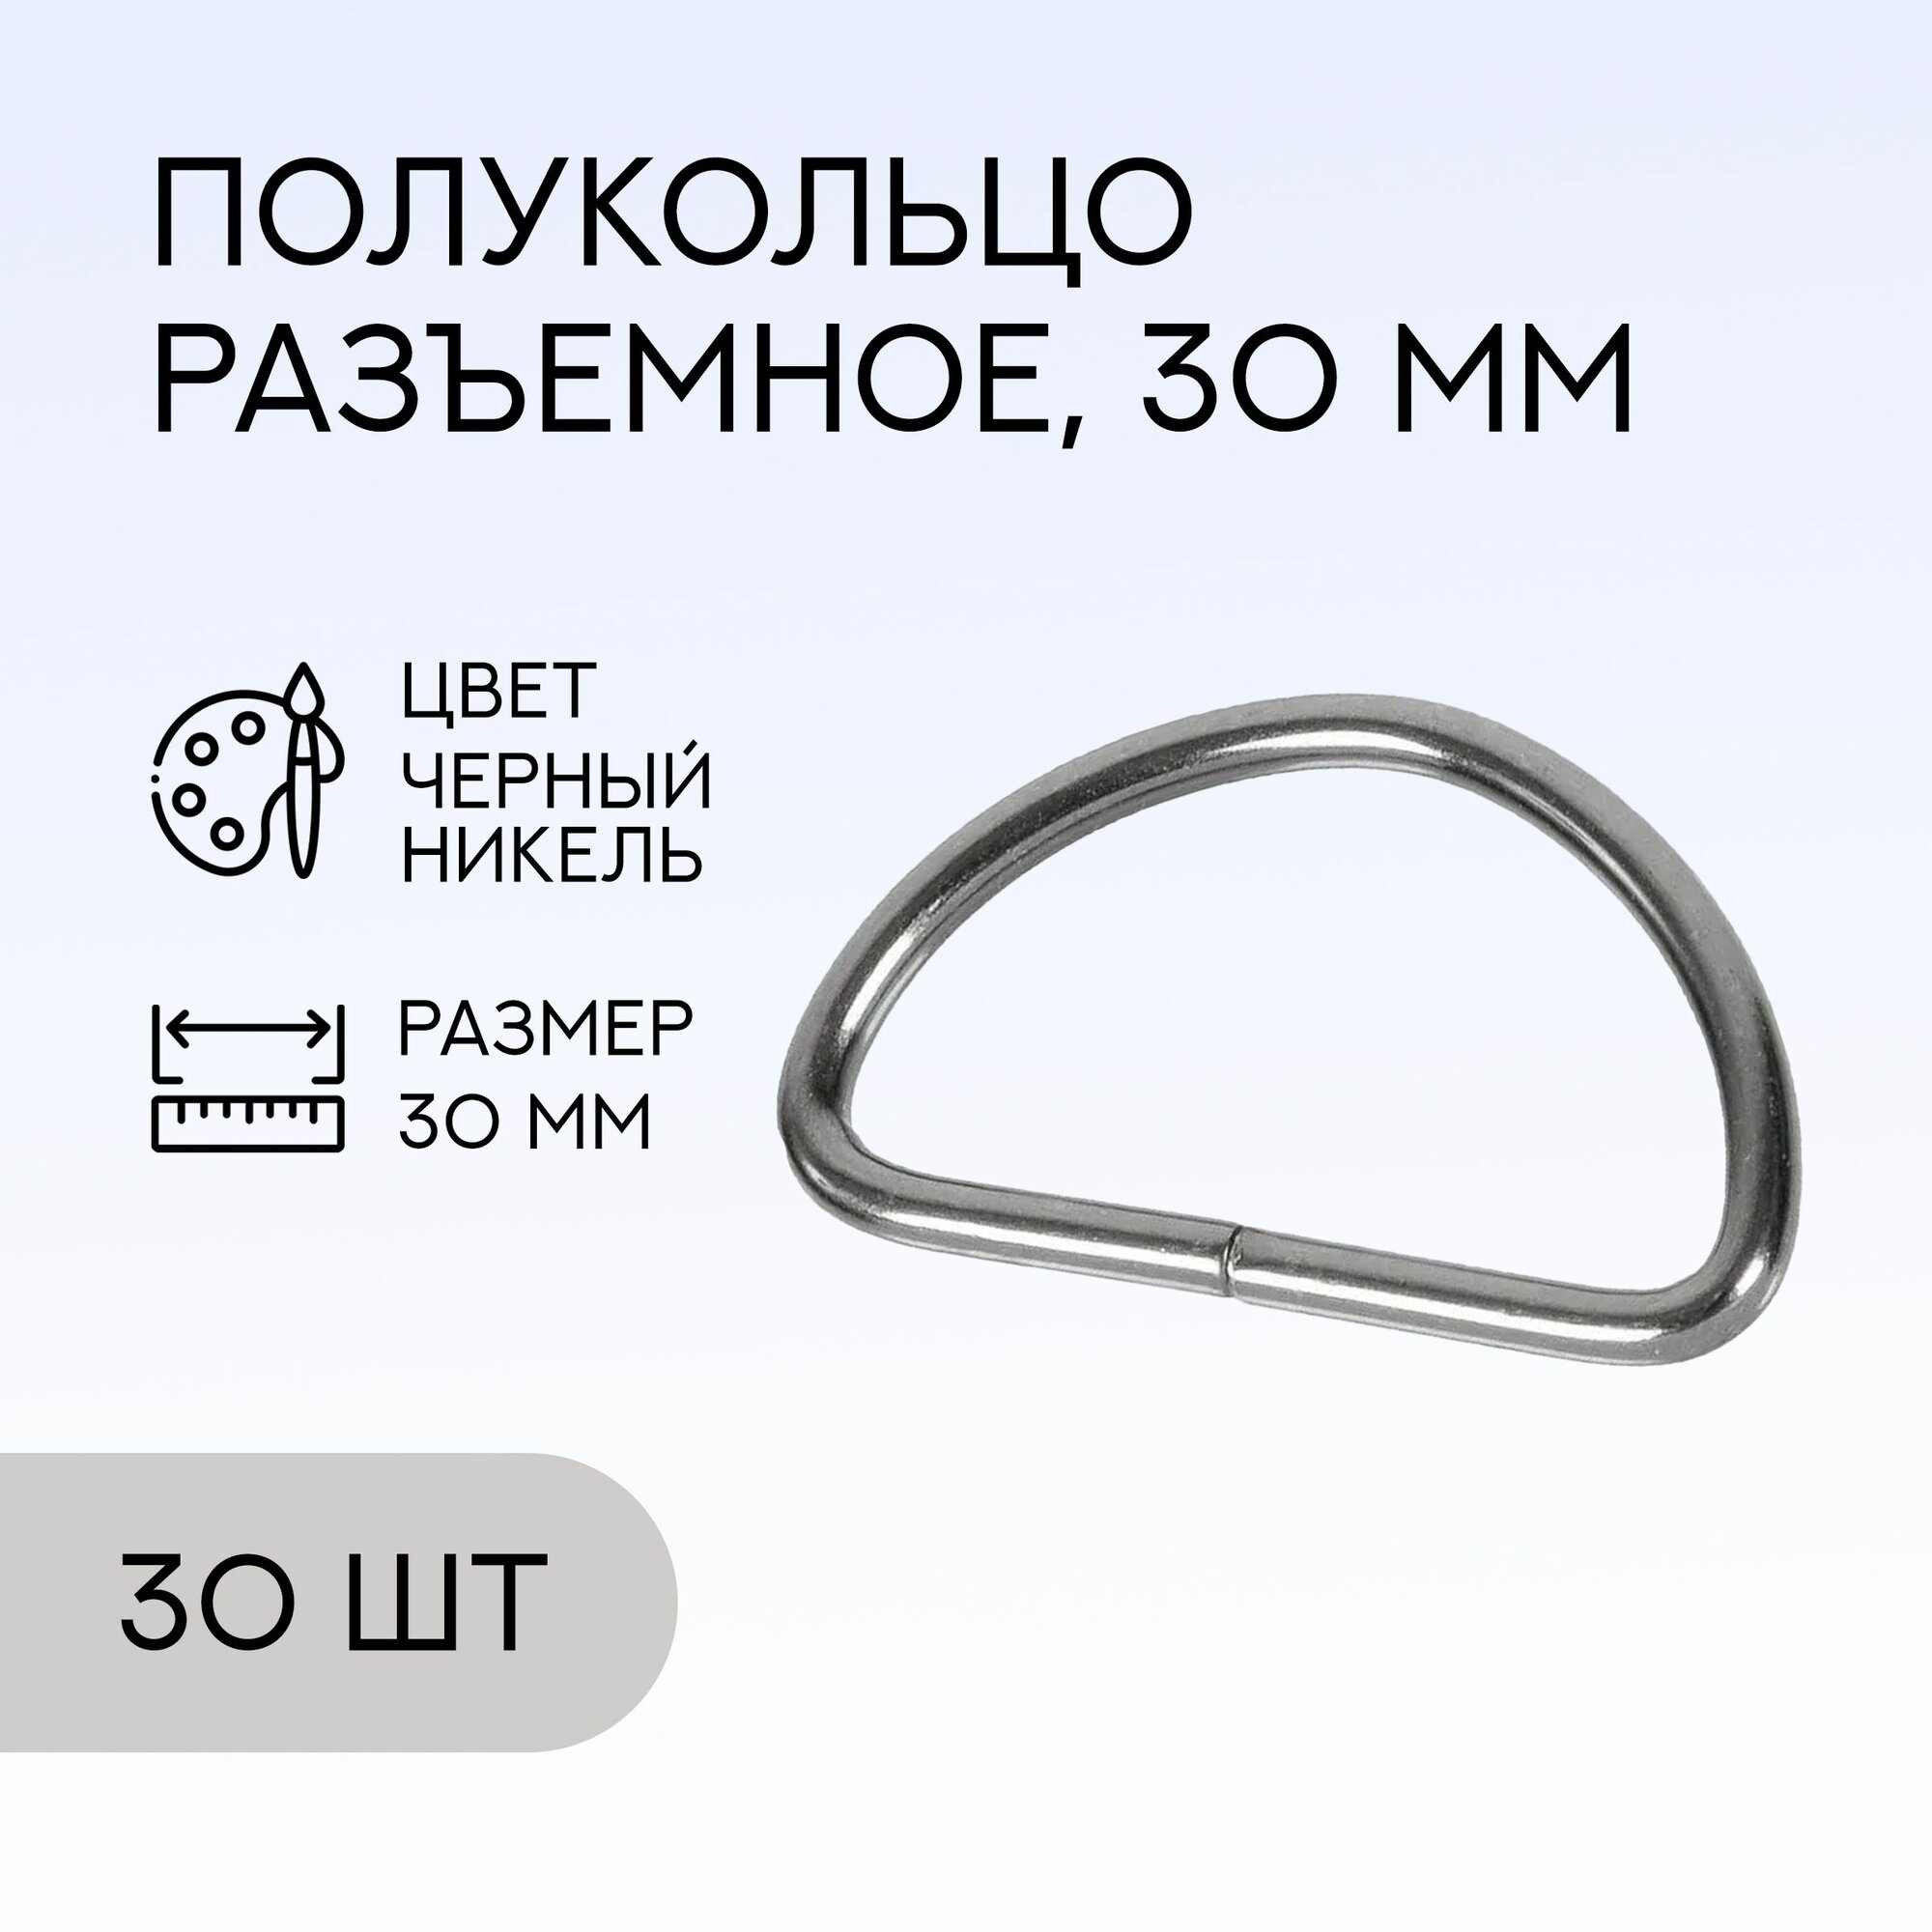 Полукольцо разъемное, 30 мм, черный никель, 30 шт. / кольцо для сумок и рукоделия / FG-146777_30